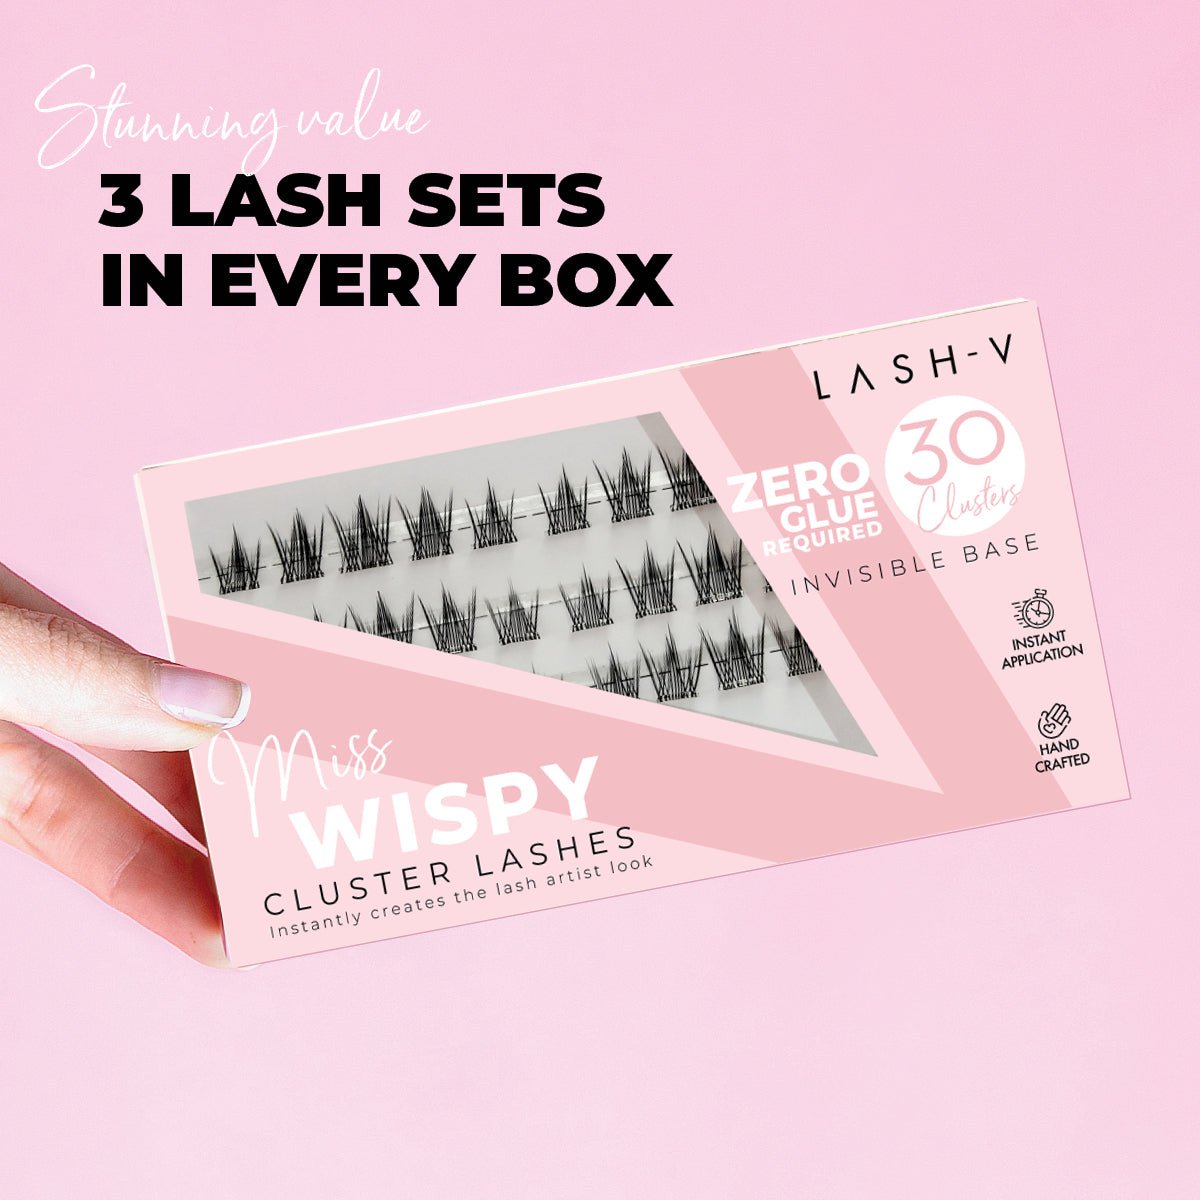 Miss Wispy Cluster Lashes - No Glue - 30 Clusters-Bundle Packs - One V Salon